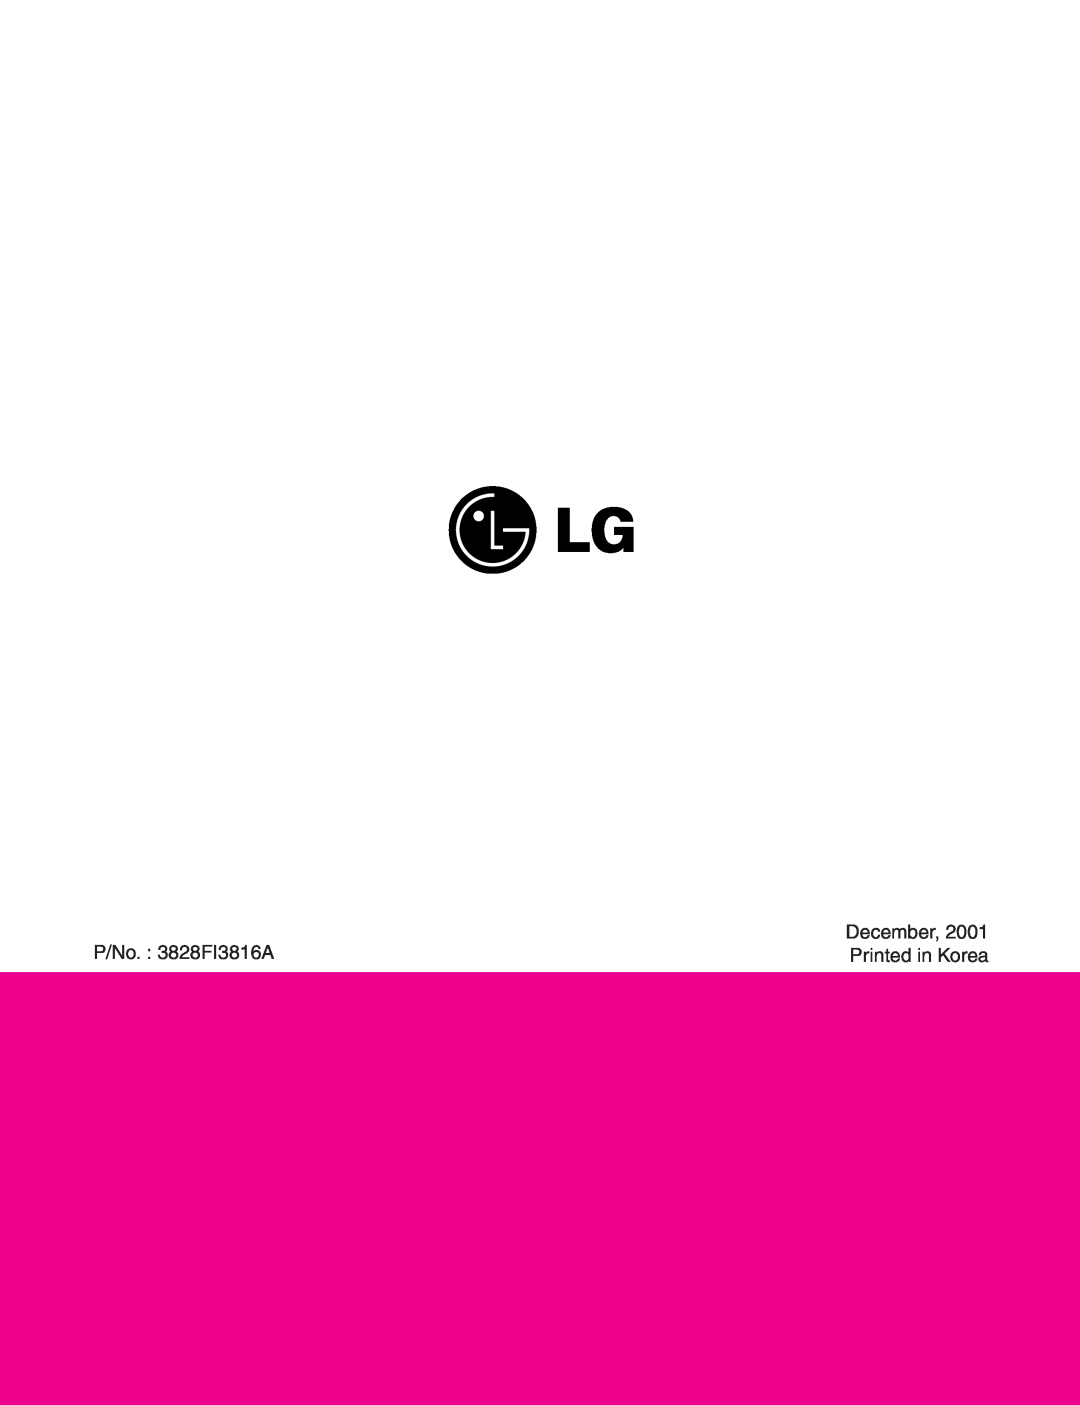 LG Electronics V-C7050NT, V-C7070CT, V-C7070CP, V-C7050HT service manual P/No. 3828FI3816A, Printed in Korea, December 